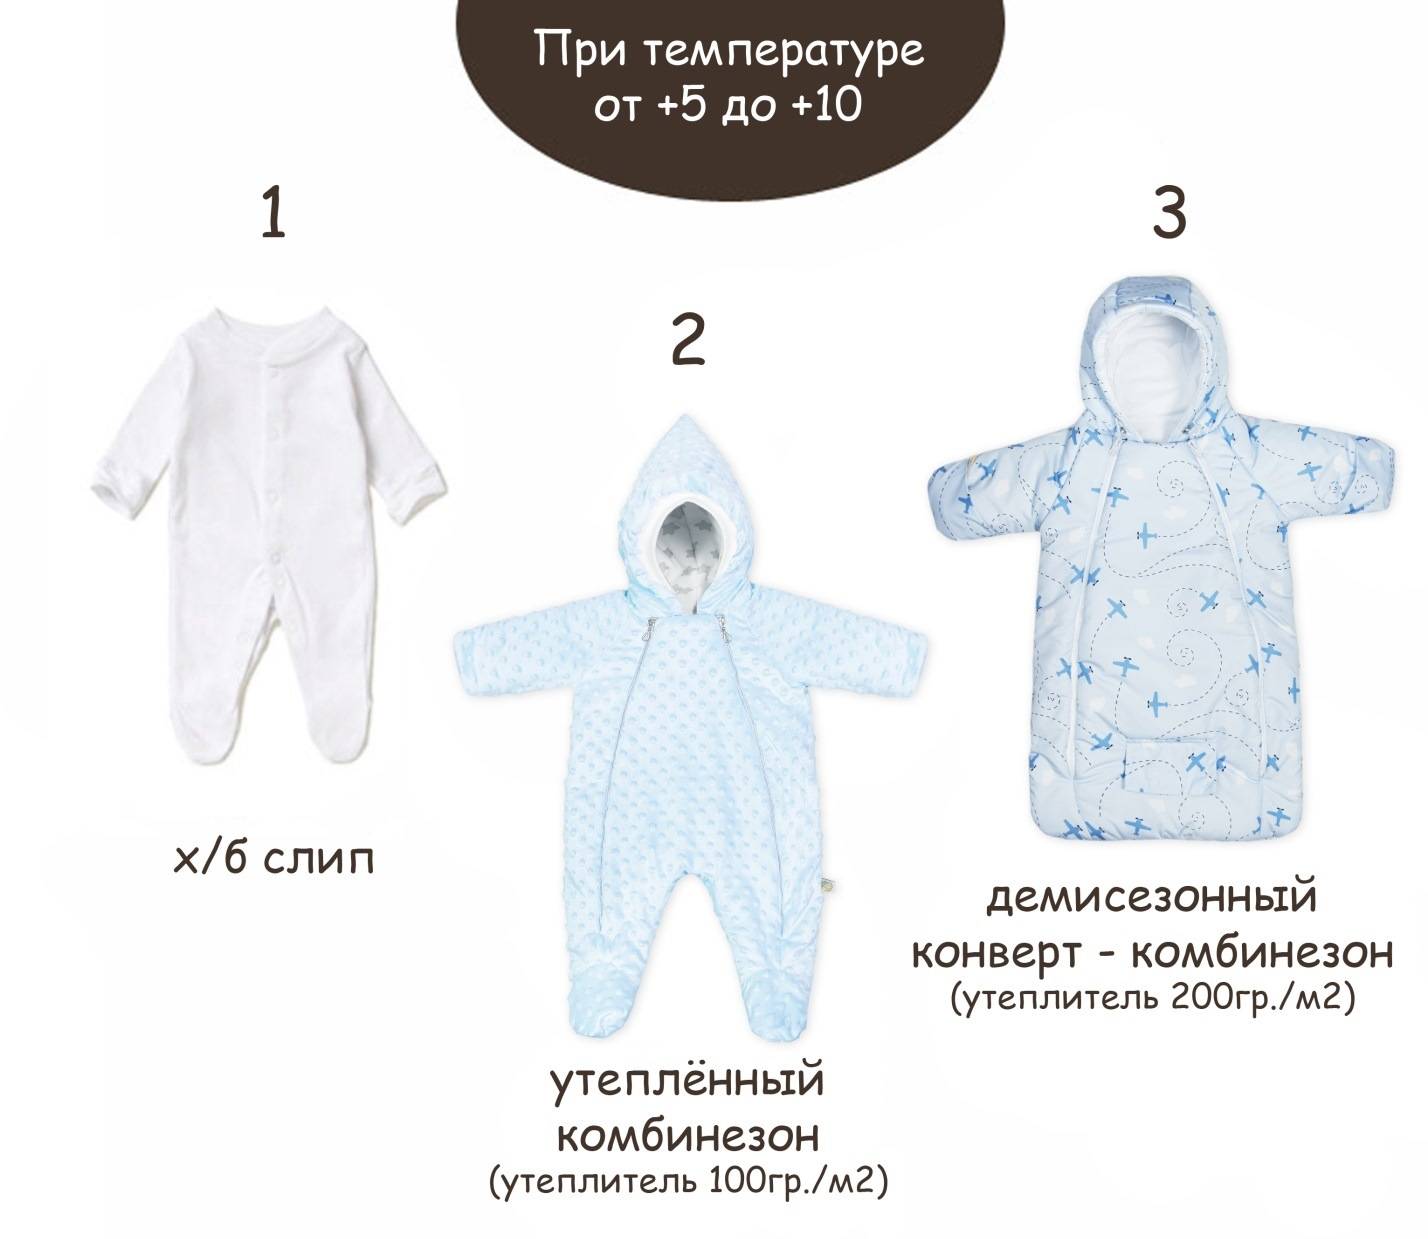 Как одевать ребенка на улицу: таблица по сезонам и температуре